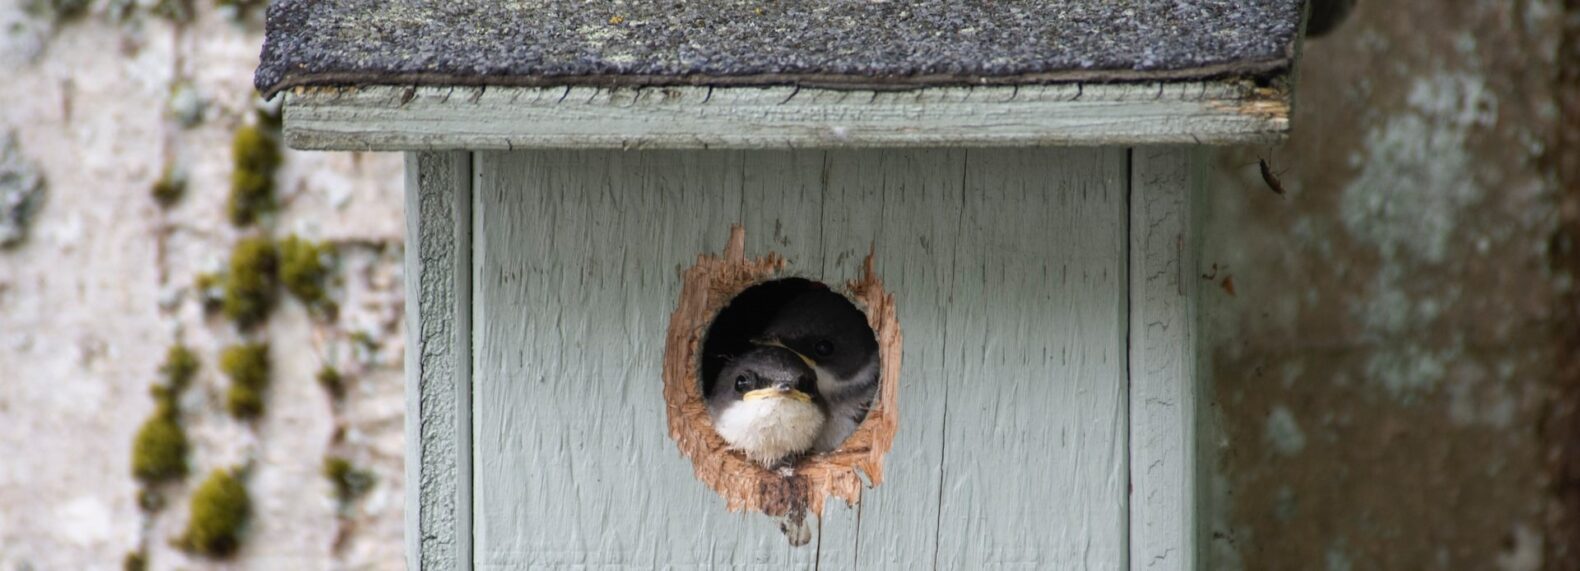 cute birds inside a birdbox